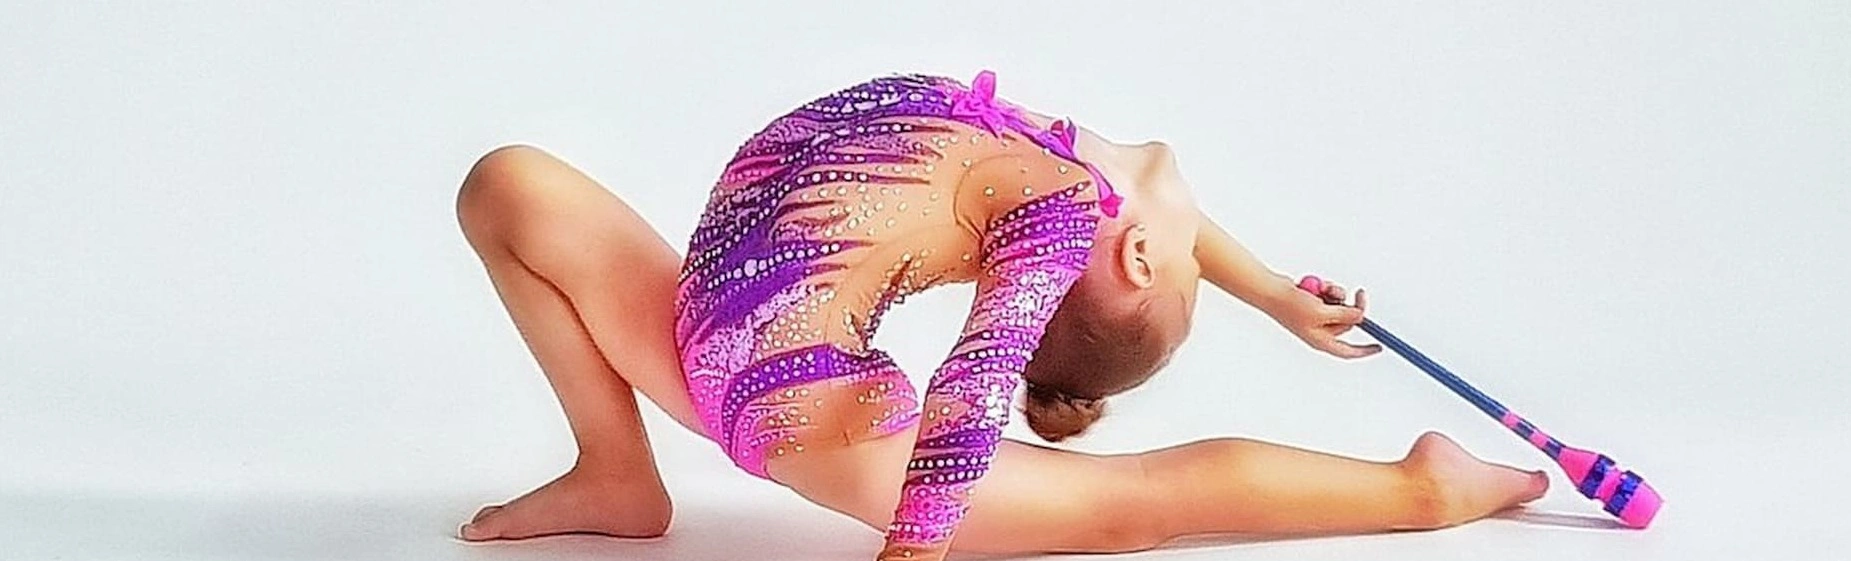 С 7 по 9 февраля в Москве состоится Гран-при по художественной гимнастике 2020